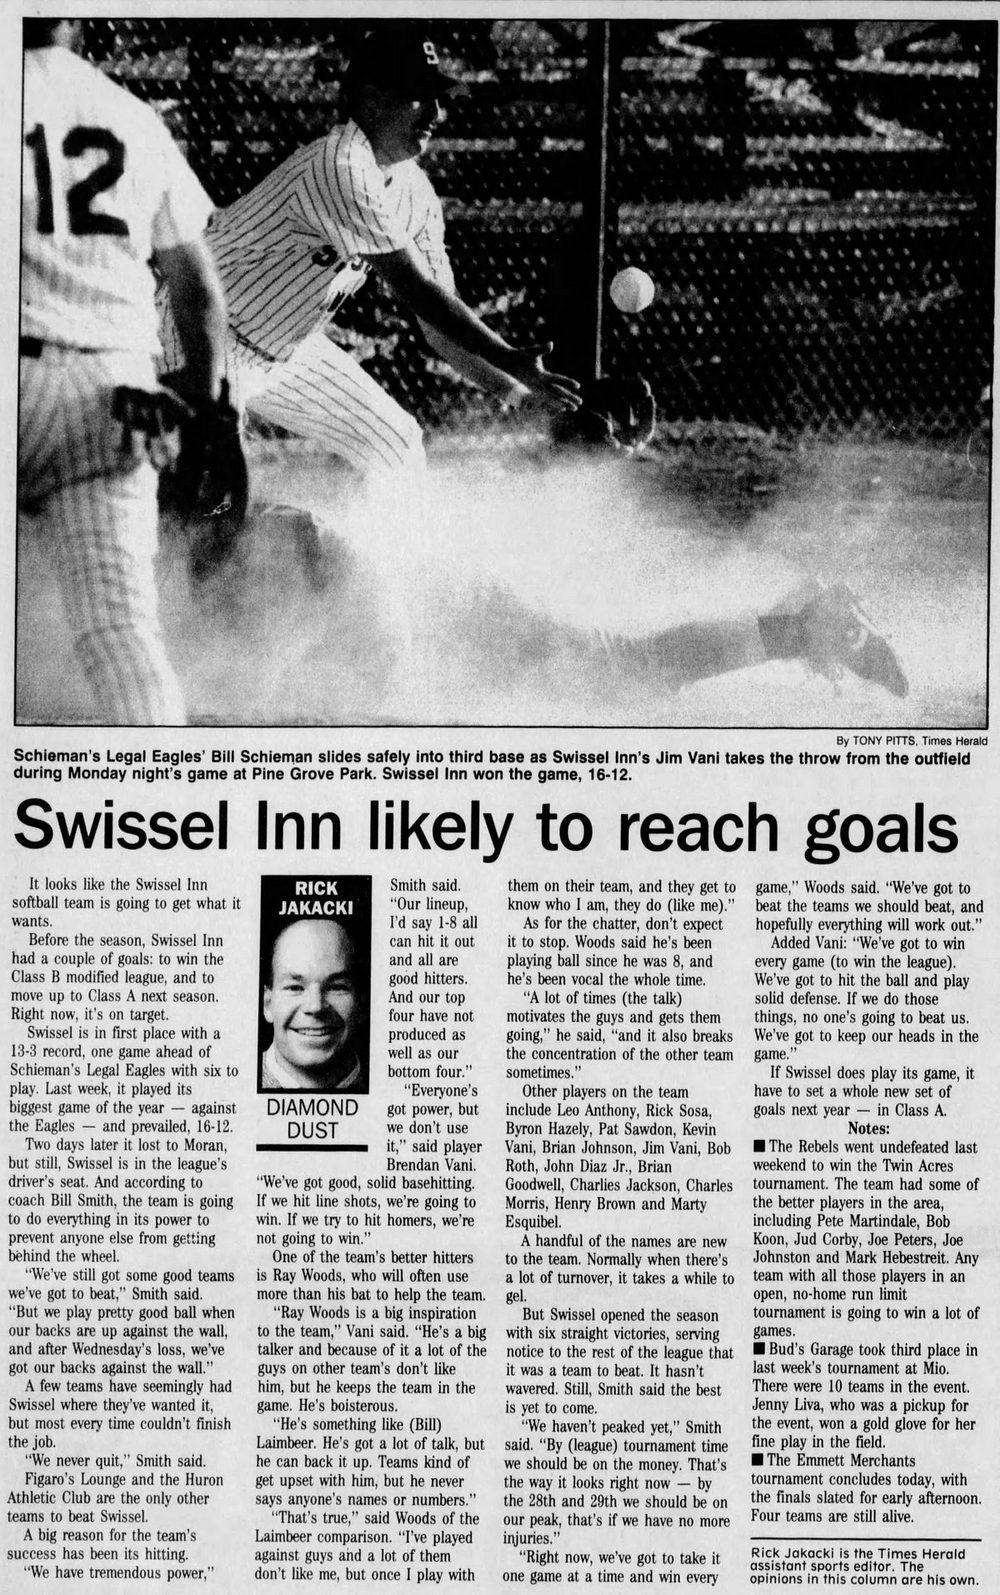 Swissel Inn - Jul 17 1994 Article